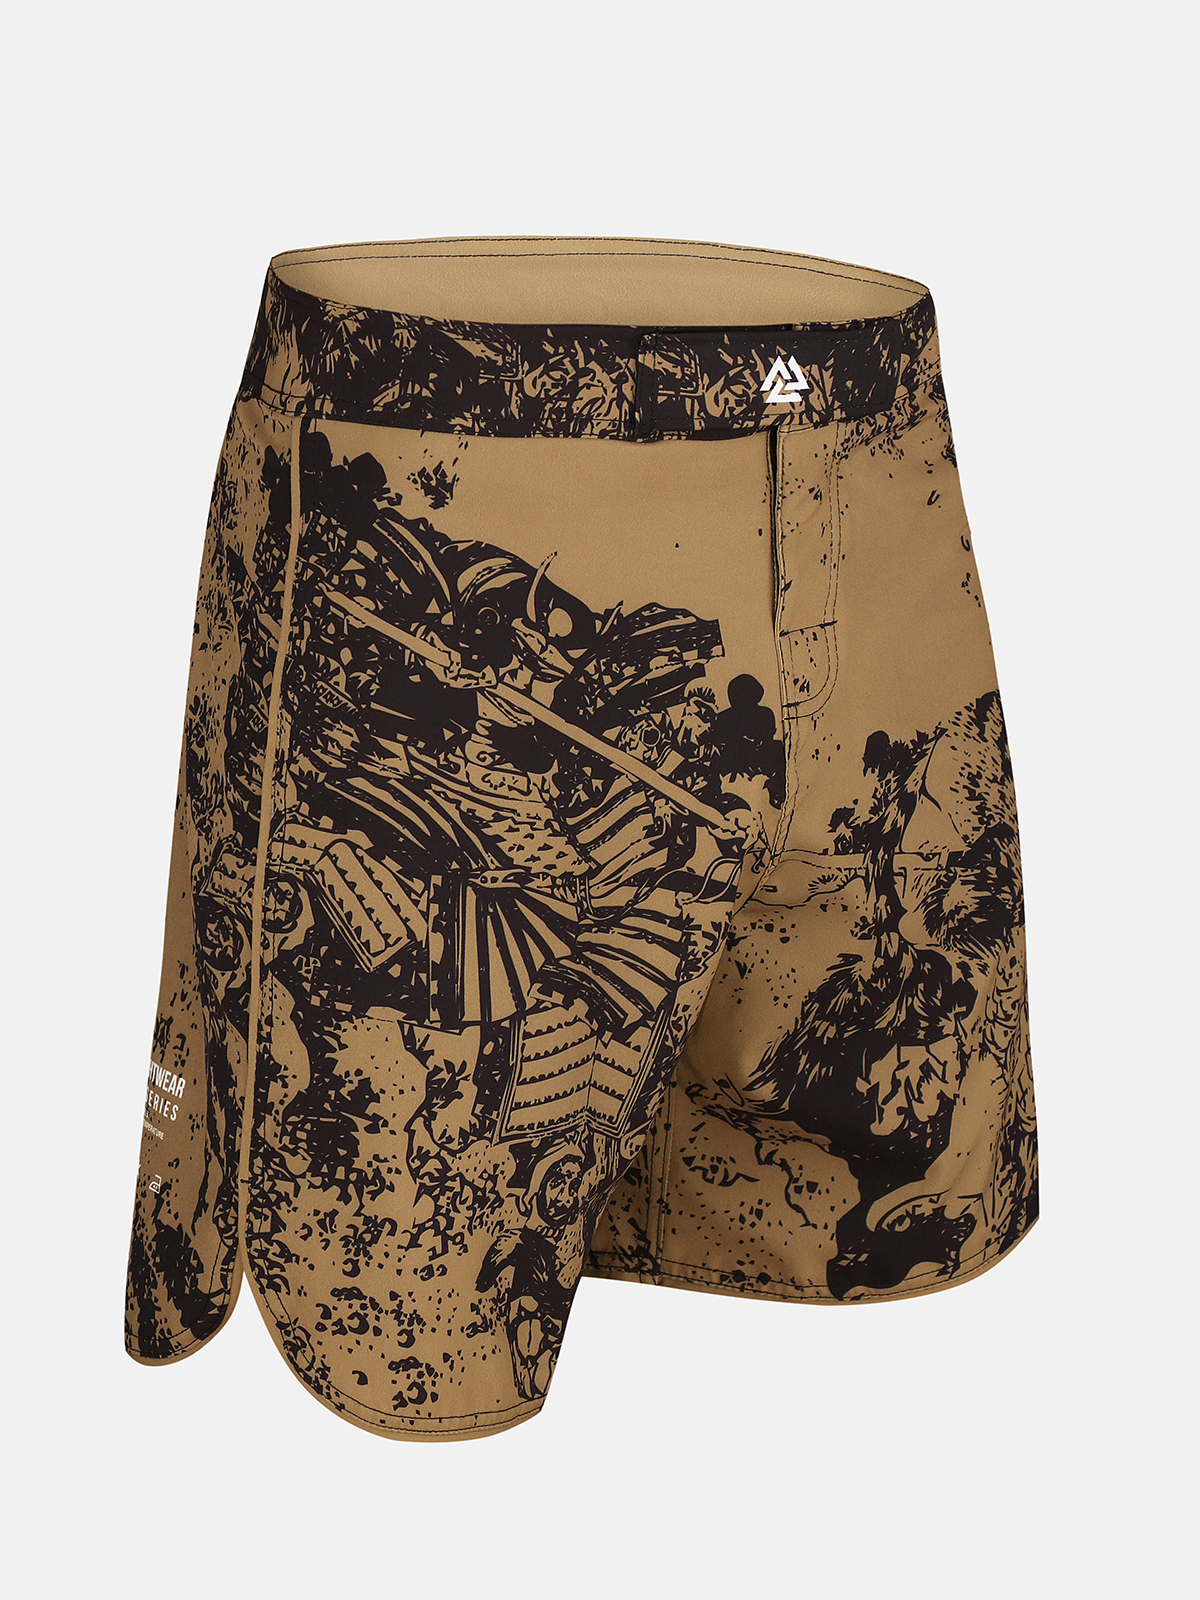 Peresvit Hokusai Sand ММА Fight Shorts, Photo No. 3